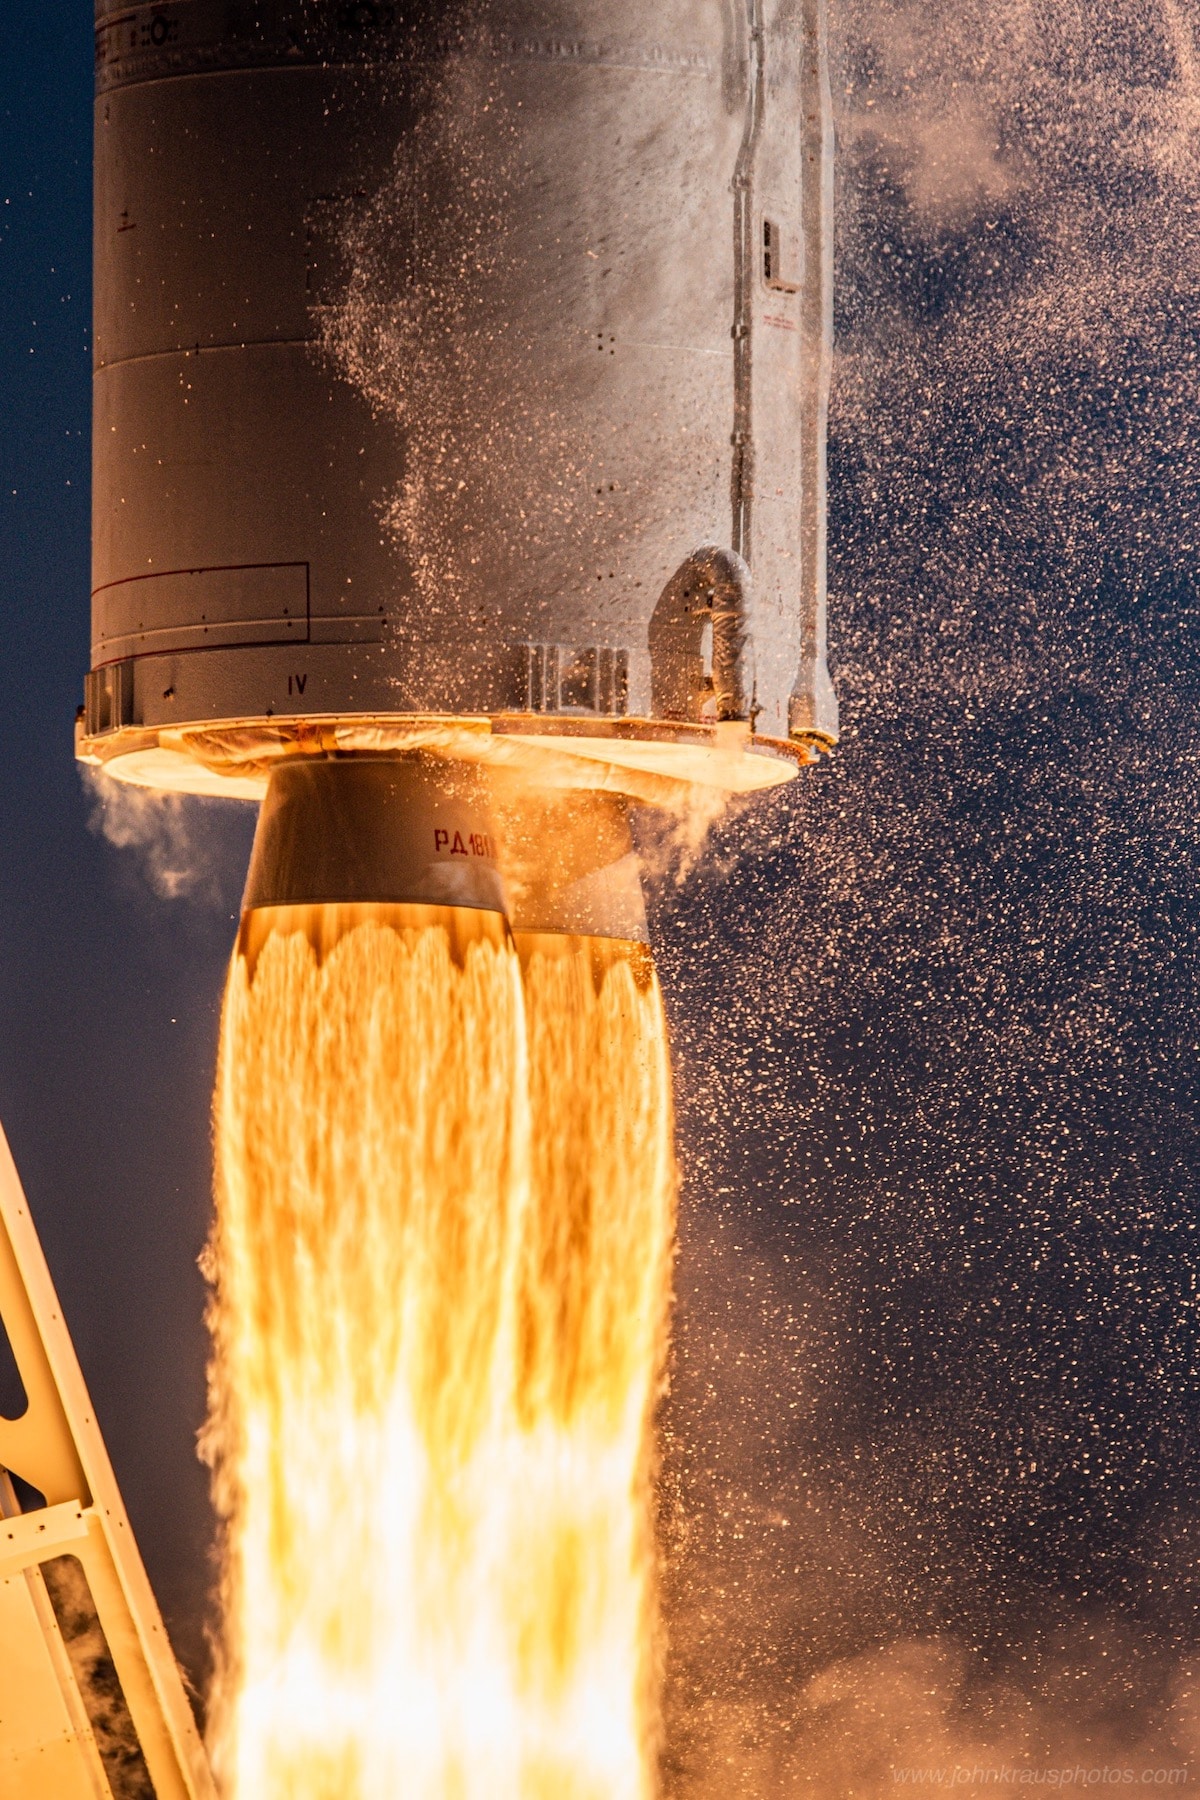 Antares Rocket Launch by John Kraus